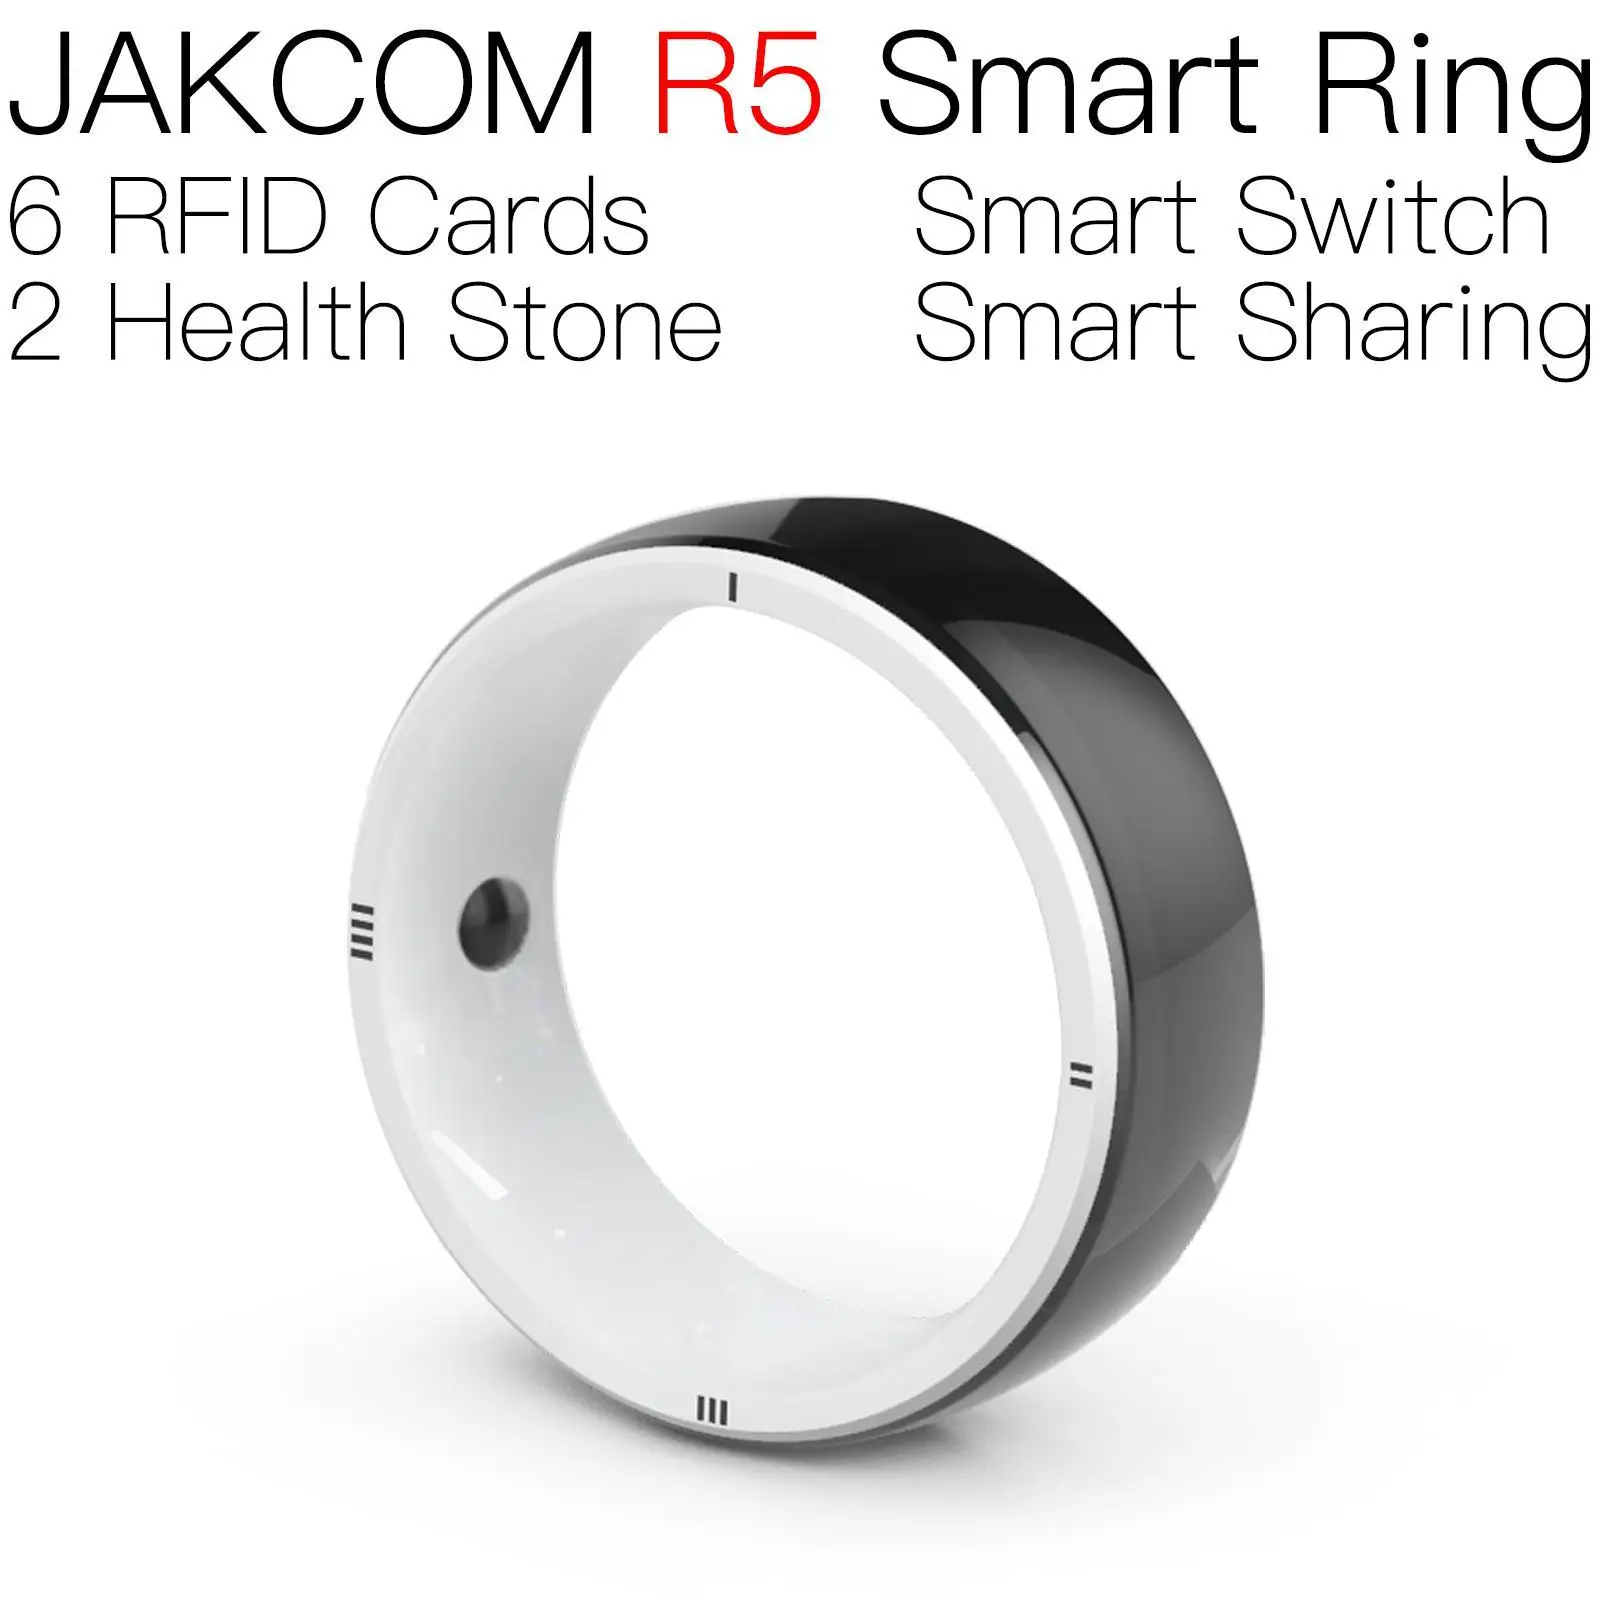 

Умное кольцо JAKCOM R5, лучше, чем uhf rfid wiegand 125 кГц перезаписываемая бирка iso15693, браслет с микрочипом собаки 100, кольцо для курицы 125